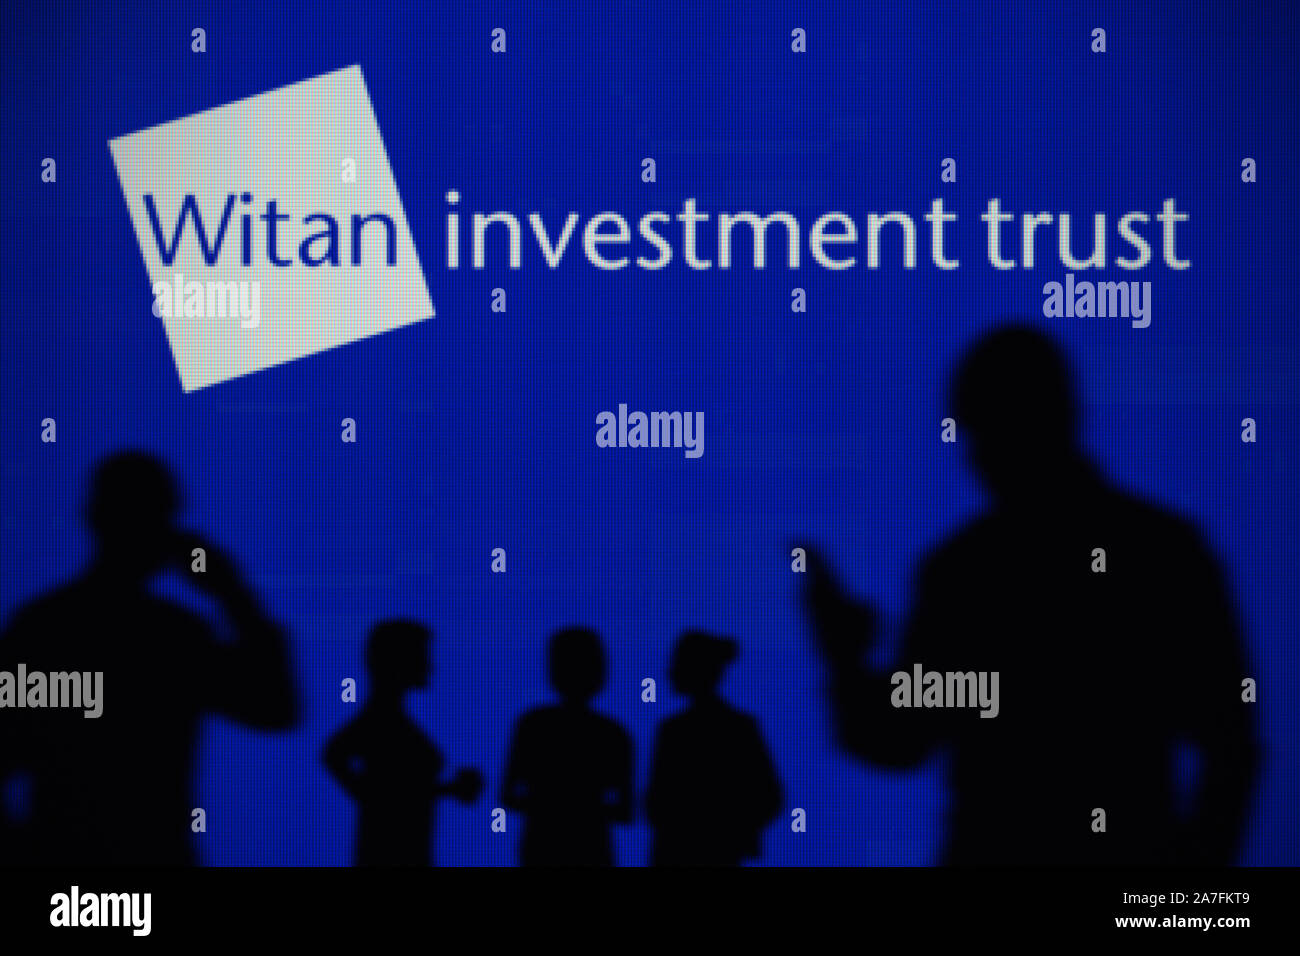 Le Witan Investment Trust logo est visible sur un écran LED à l'arrière-plan tandis qu'une silhouette personne utilise un smartphone (usage éditorial uniquement) Banque D'Images